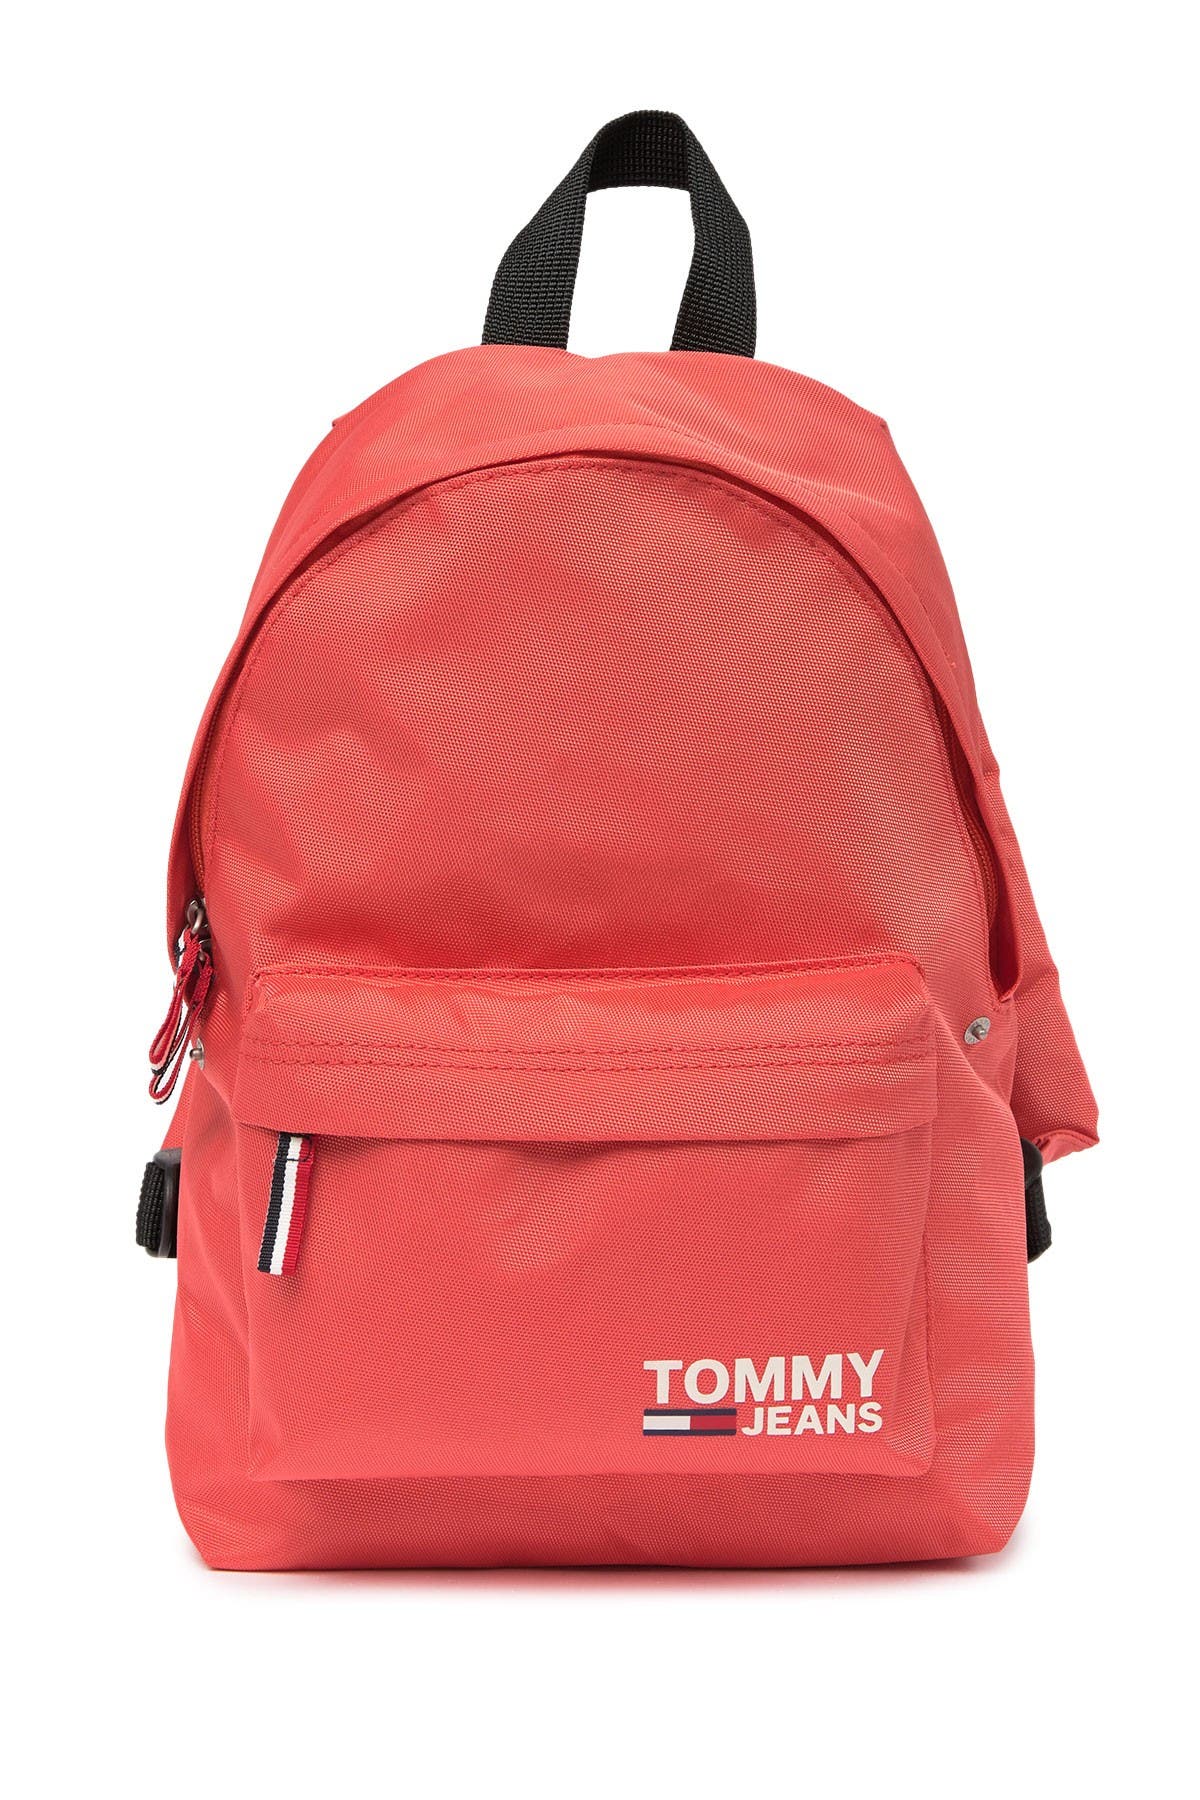 tommy hilfiger backpack for girl